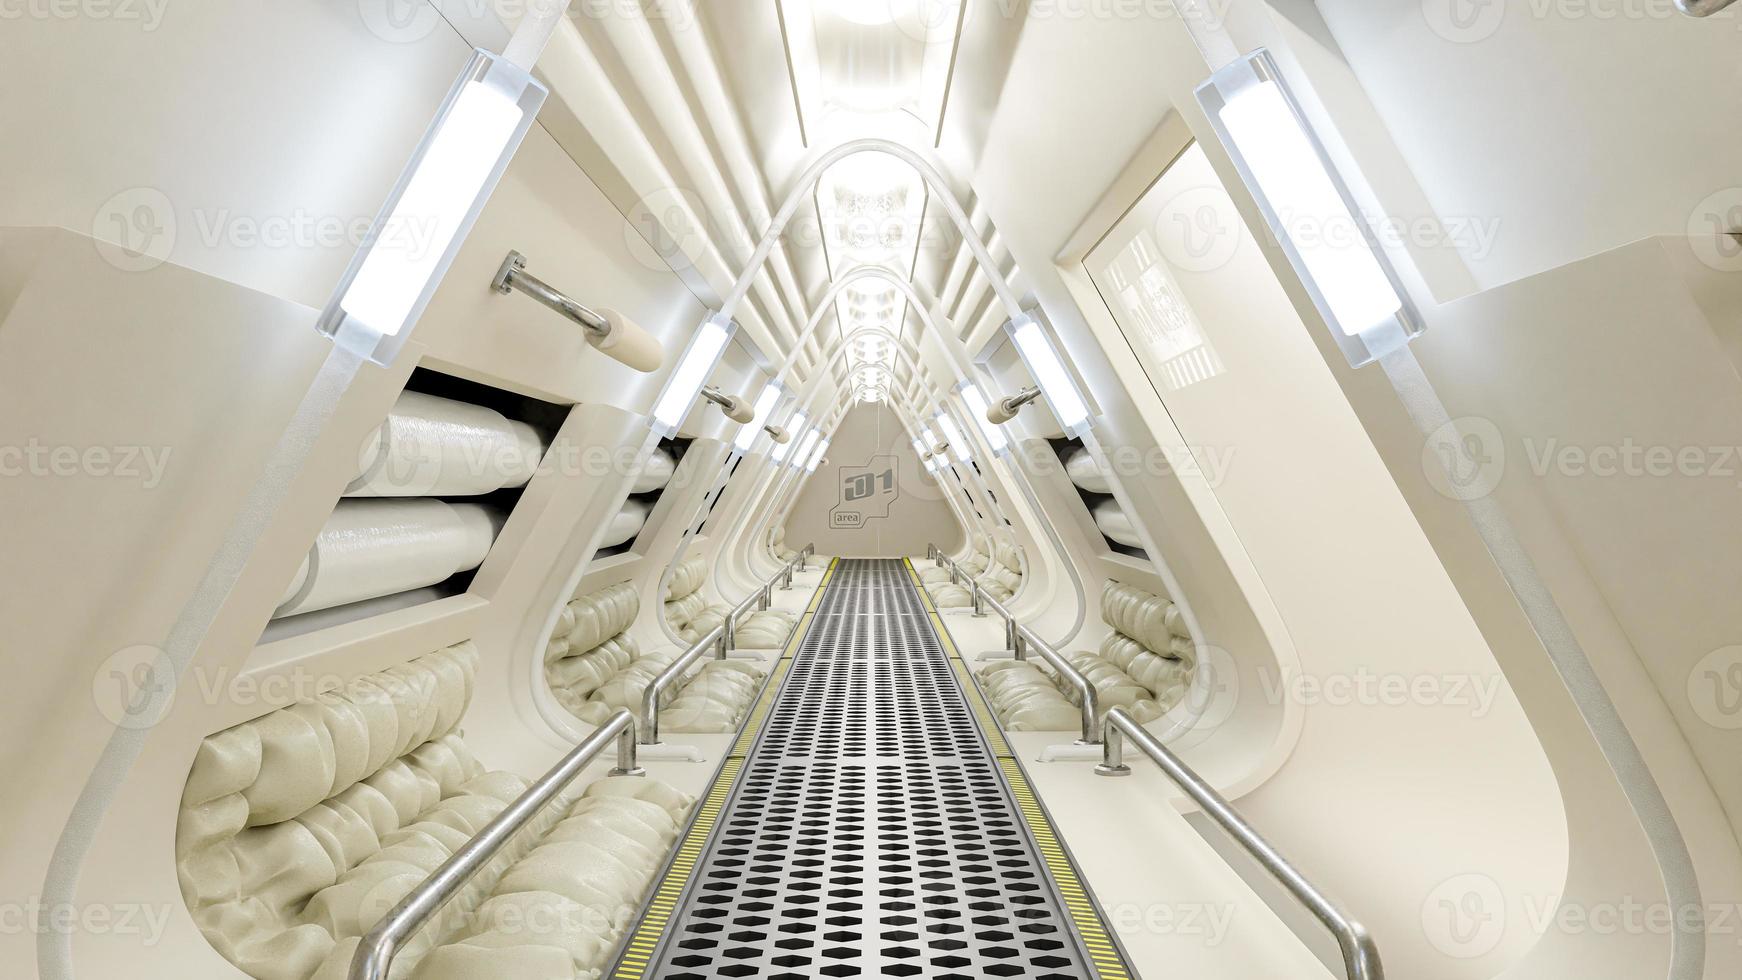 Korridor in der Raumstation oder im Labor mit grauer Farbe dekoriert. futuristischer Science-Fiction- und Technologiehintergrund. foto